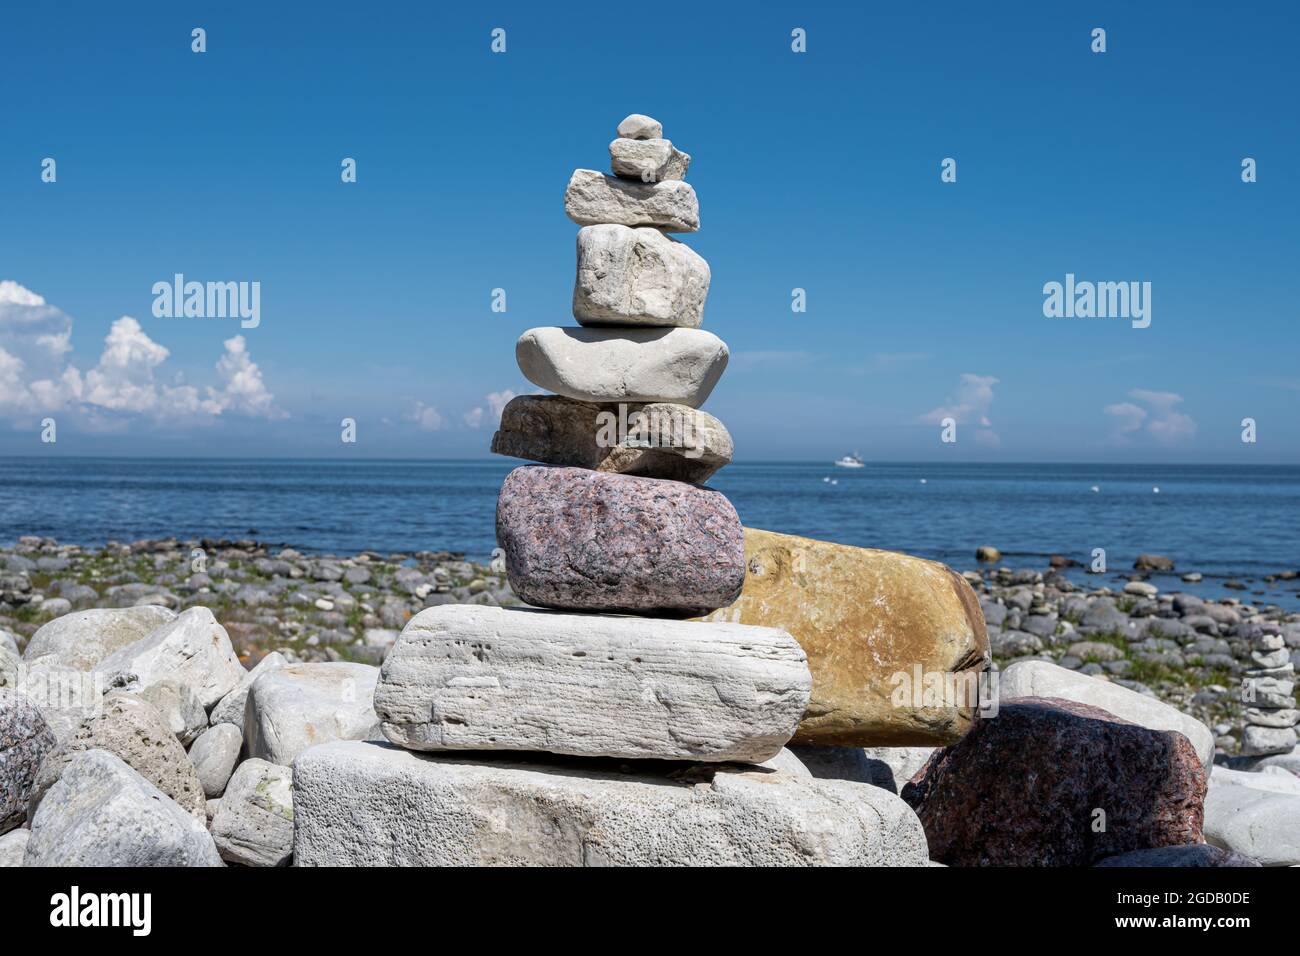 Une pile de pierres sur une plage. Photo de l'île d'Oland, en mer Baltique Banque D'Images